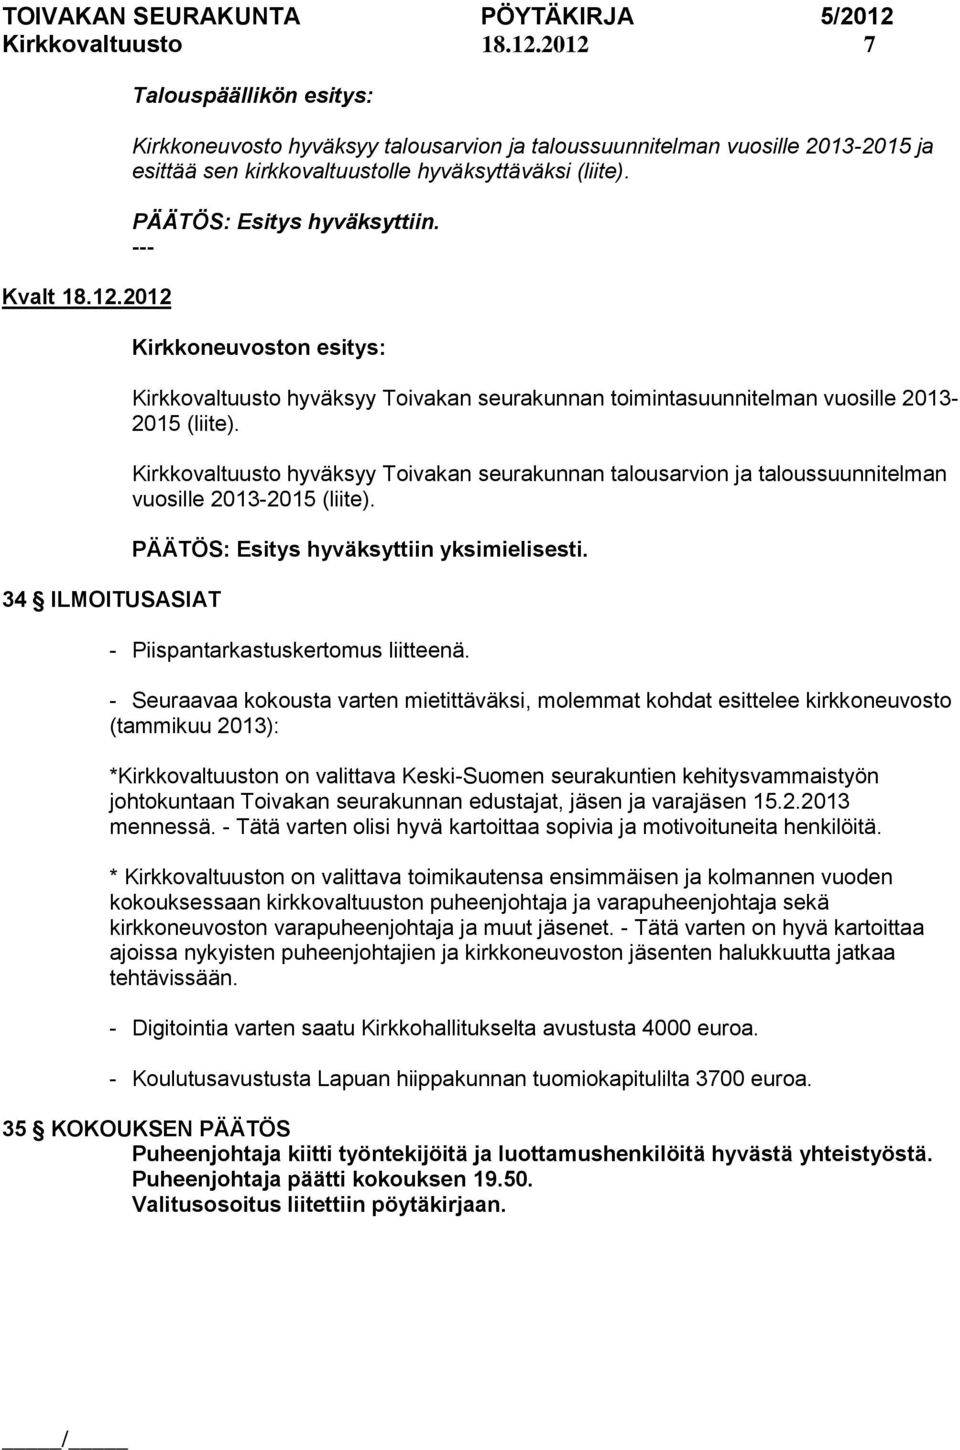 PÄÄTÖS: Esitys hyväksyttiin. Kirkkoneuvoston esitys: Kirkkovaltuusto hyväksyy Toivakan seurakunnan toimintasuunnitelman vuosille 2013-2015 (liite).